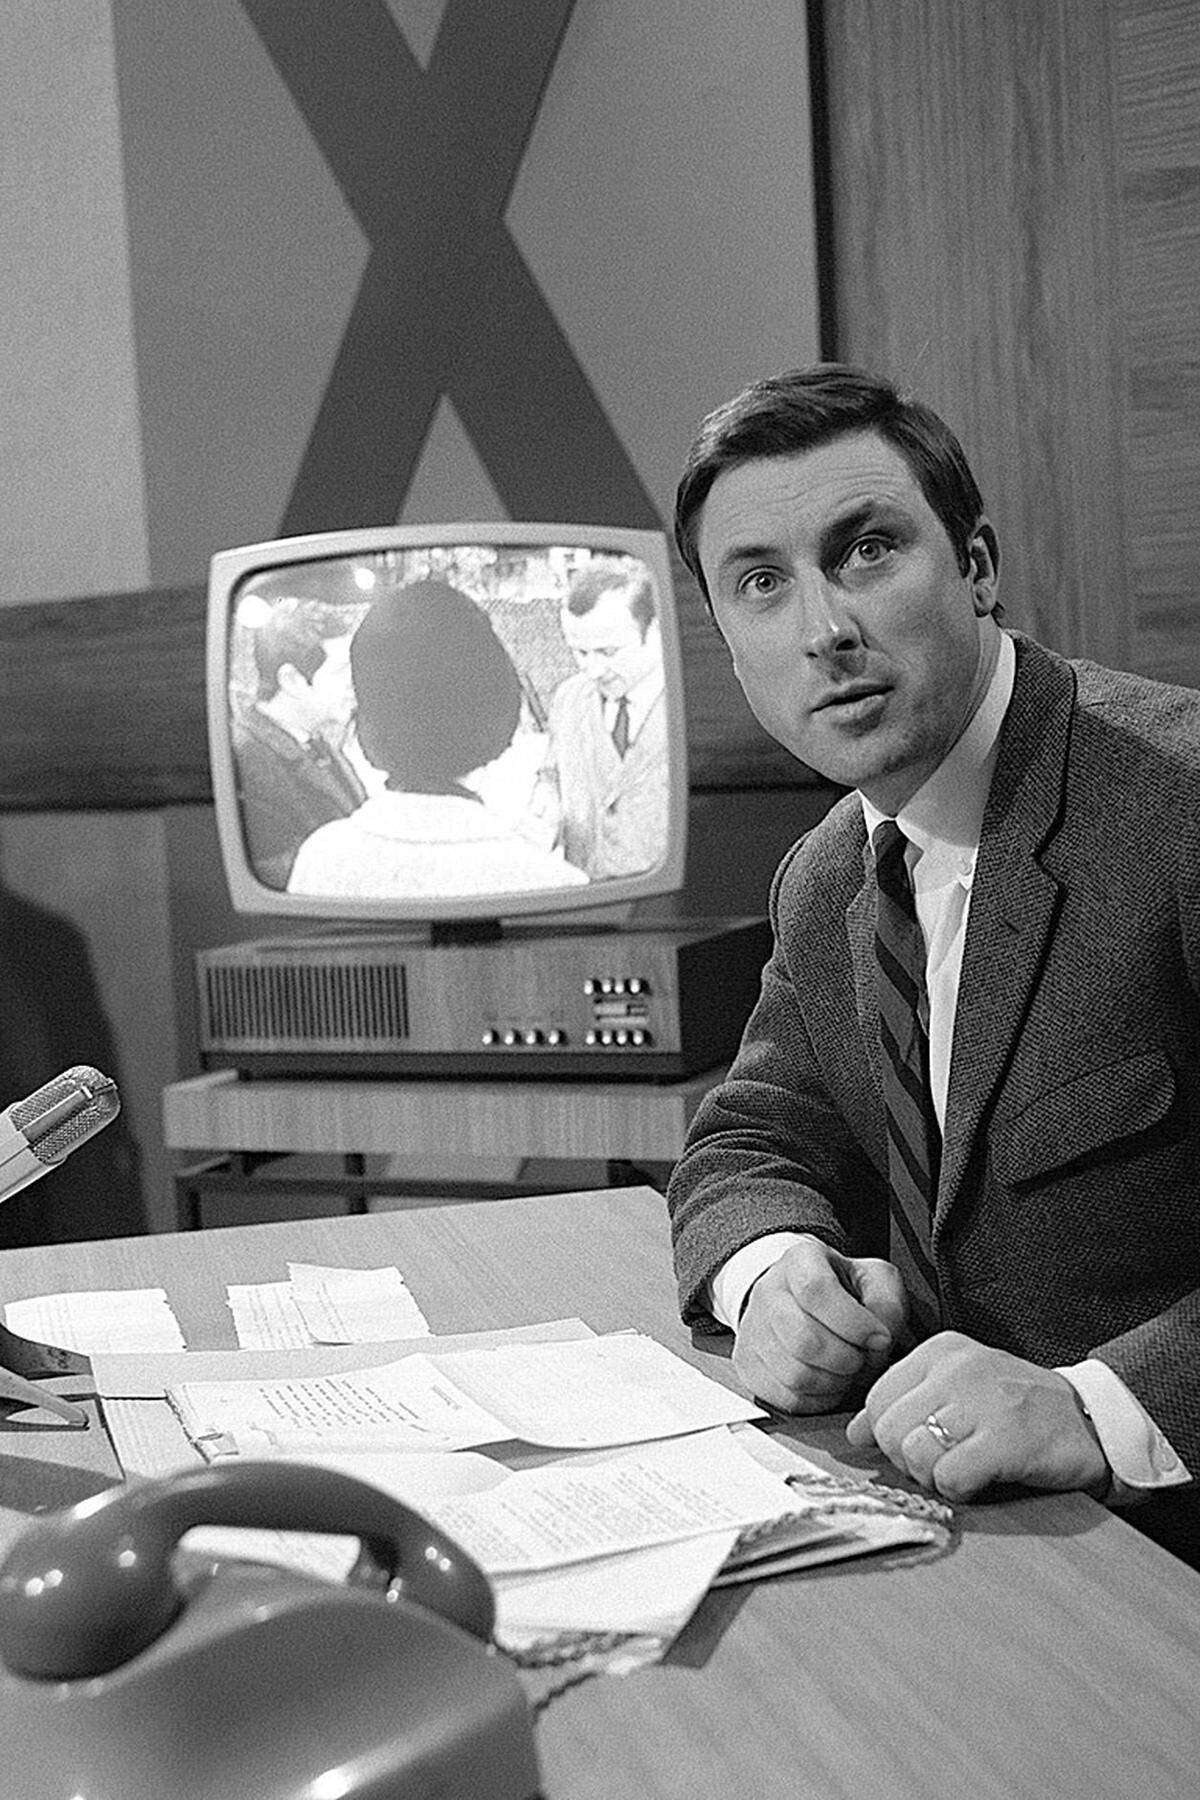 Erst 1960 bekam die Österreichische Rundfunk GesmbH nach dem Krieg ihren ersten Generalintendanten: Josef Scheidl. Bereits 1955 aber war das „Österreichische Rundfunkwesen“ gestartet– ein regelmäßiges TV-Versuchsprogramm. Im Herbst 1955 startete die „Zeit im Bild“ nach dem Vorbild der „Nine O'Clock News“ der BBC. Thaddäus Podgorski, damals freier Mitarbeiter, hatte die Idee für den Namen: „Es ist zwar net besonders g'scheit, aber wie wär's mit ,Zeit im Bild‘?“, schlug er vor. Gesendet wurde aus Schönbrunn – das Studio befand sich im heutigen Affenhaus des Tierparks. 1958 wurde erstmals TV-Gebühr eingehoben: 50 Schilling pro Monat; 1959 lief die erste Fernsehwerbung. 1961 startete der ORF unter Scheidl einen zweiten Versuchskanal. Erst 1970 ging ORF2 täglich auf Sendung. Im Bild: Thaddäus Podgorski